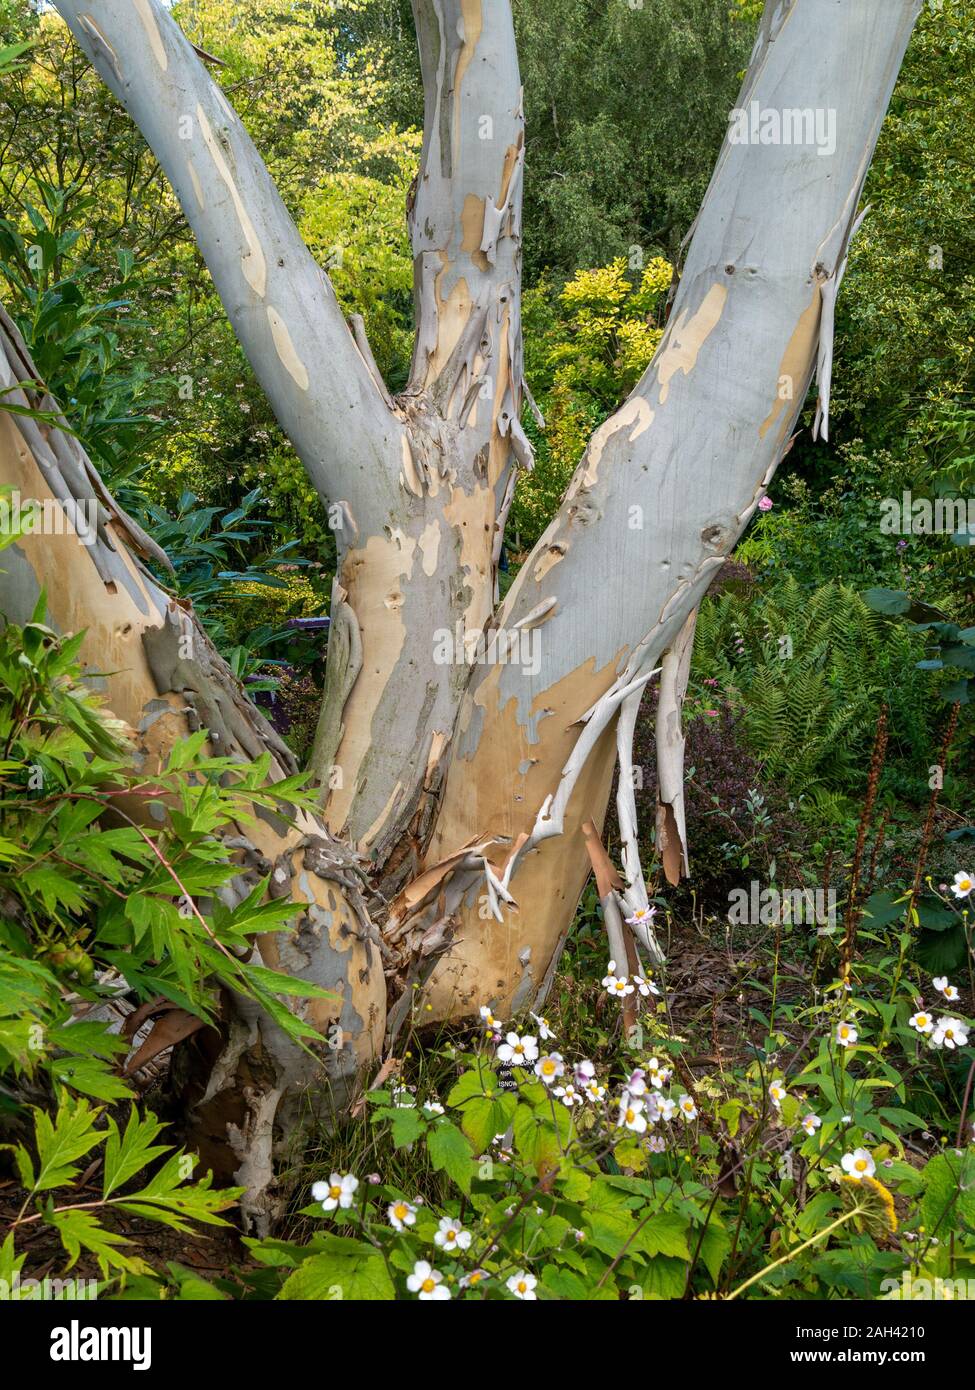 Sur les lignes de l'écorce de déroulage Eucalyptus niphophila pauciflora (gommier des neiges), arbres, jardins Barnsdale Rutland, England, UK Banque D'Images